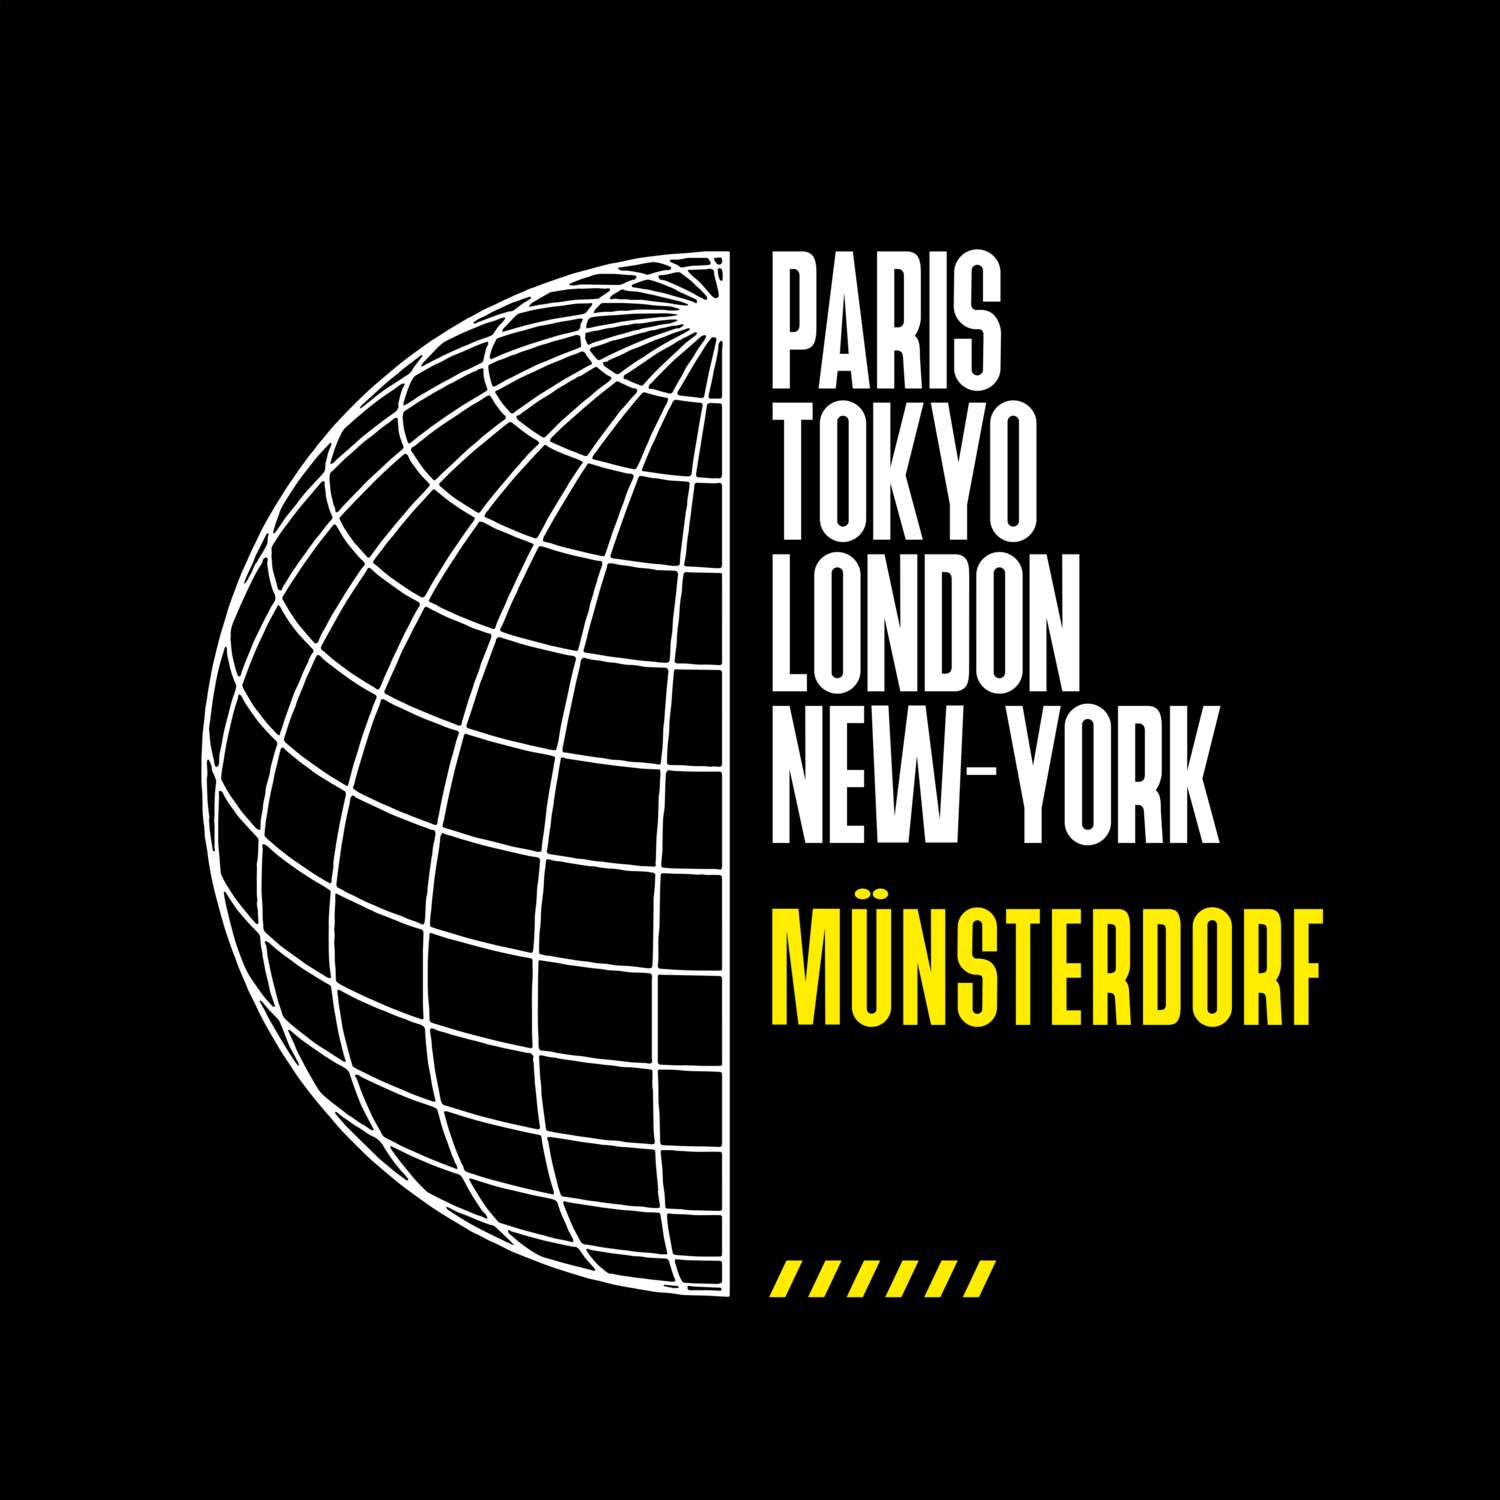 Münsterdorf T-Shirt »Paris Tokyo London«